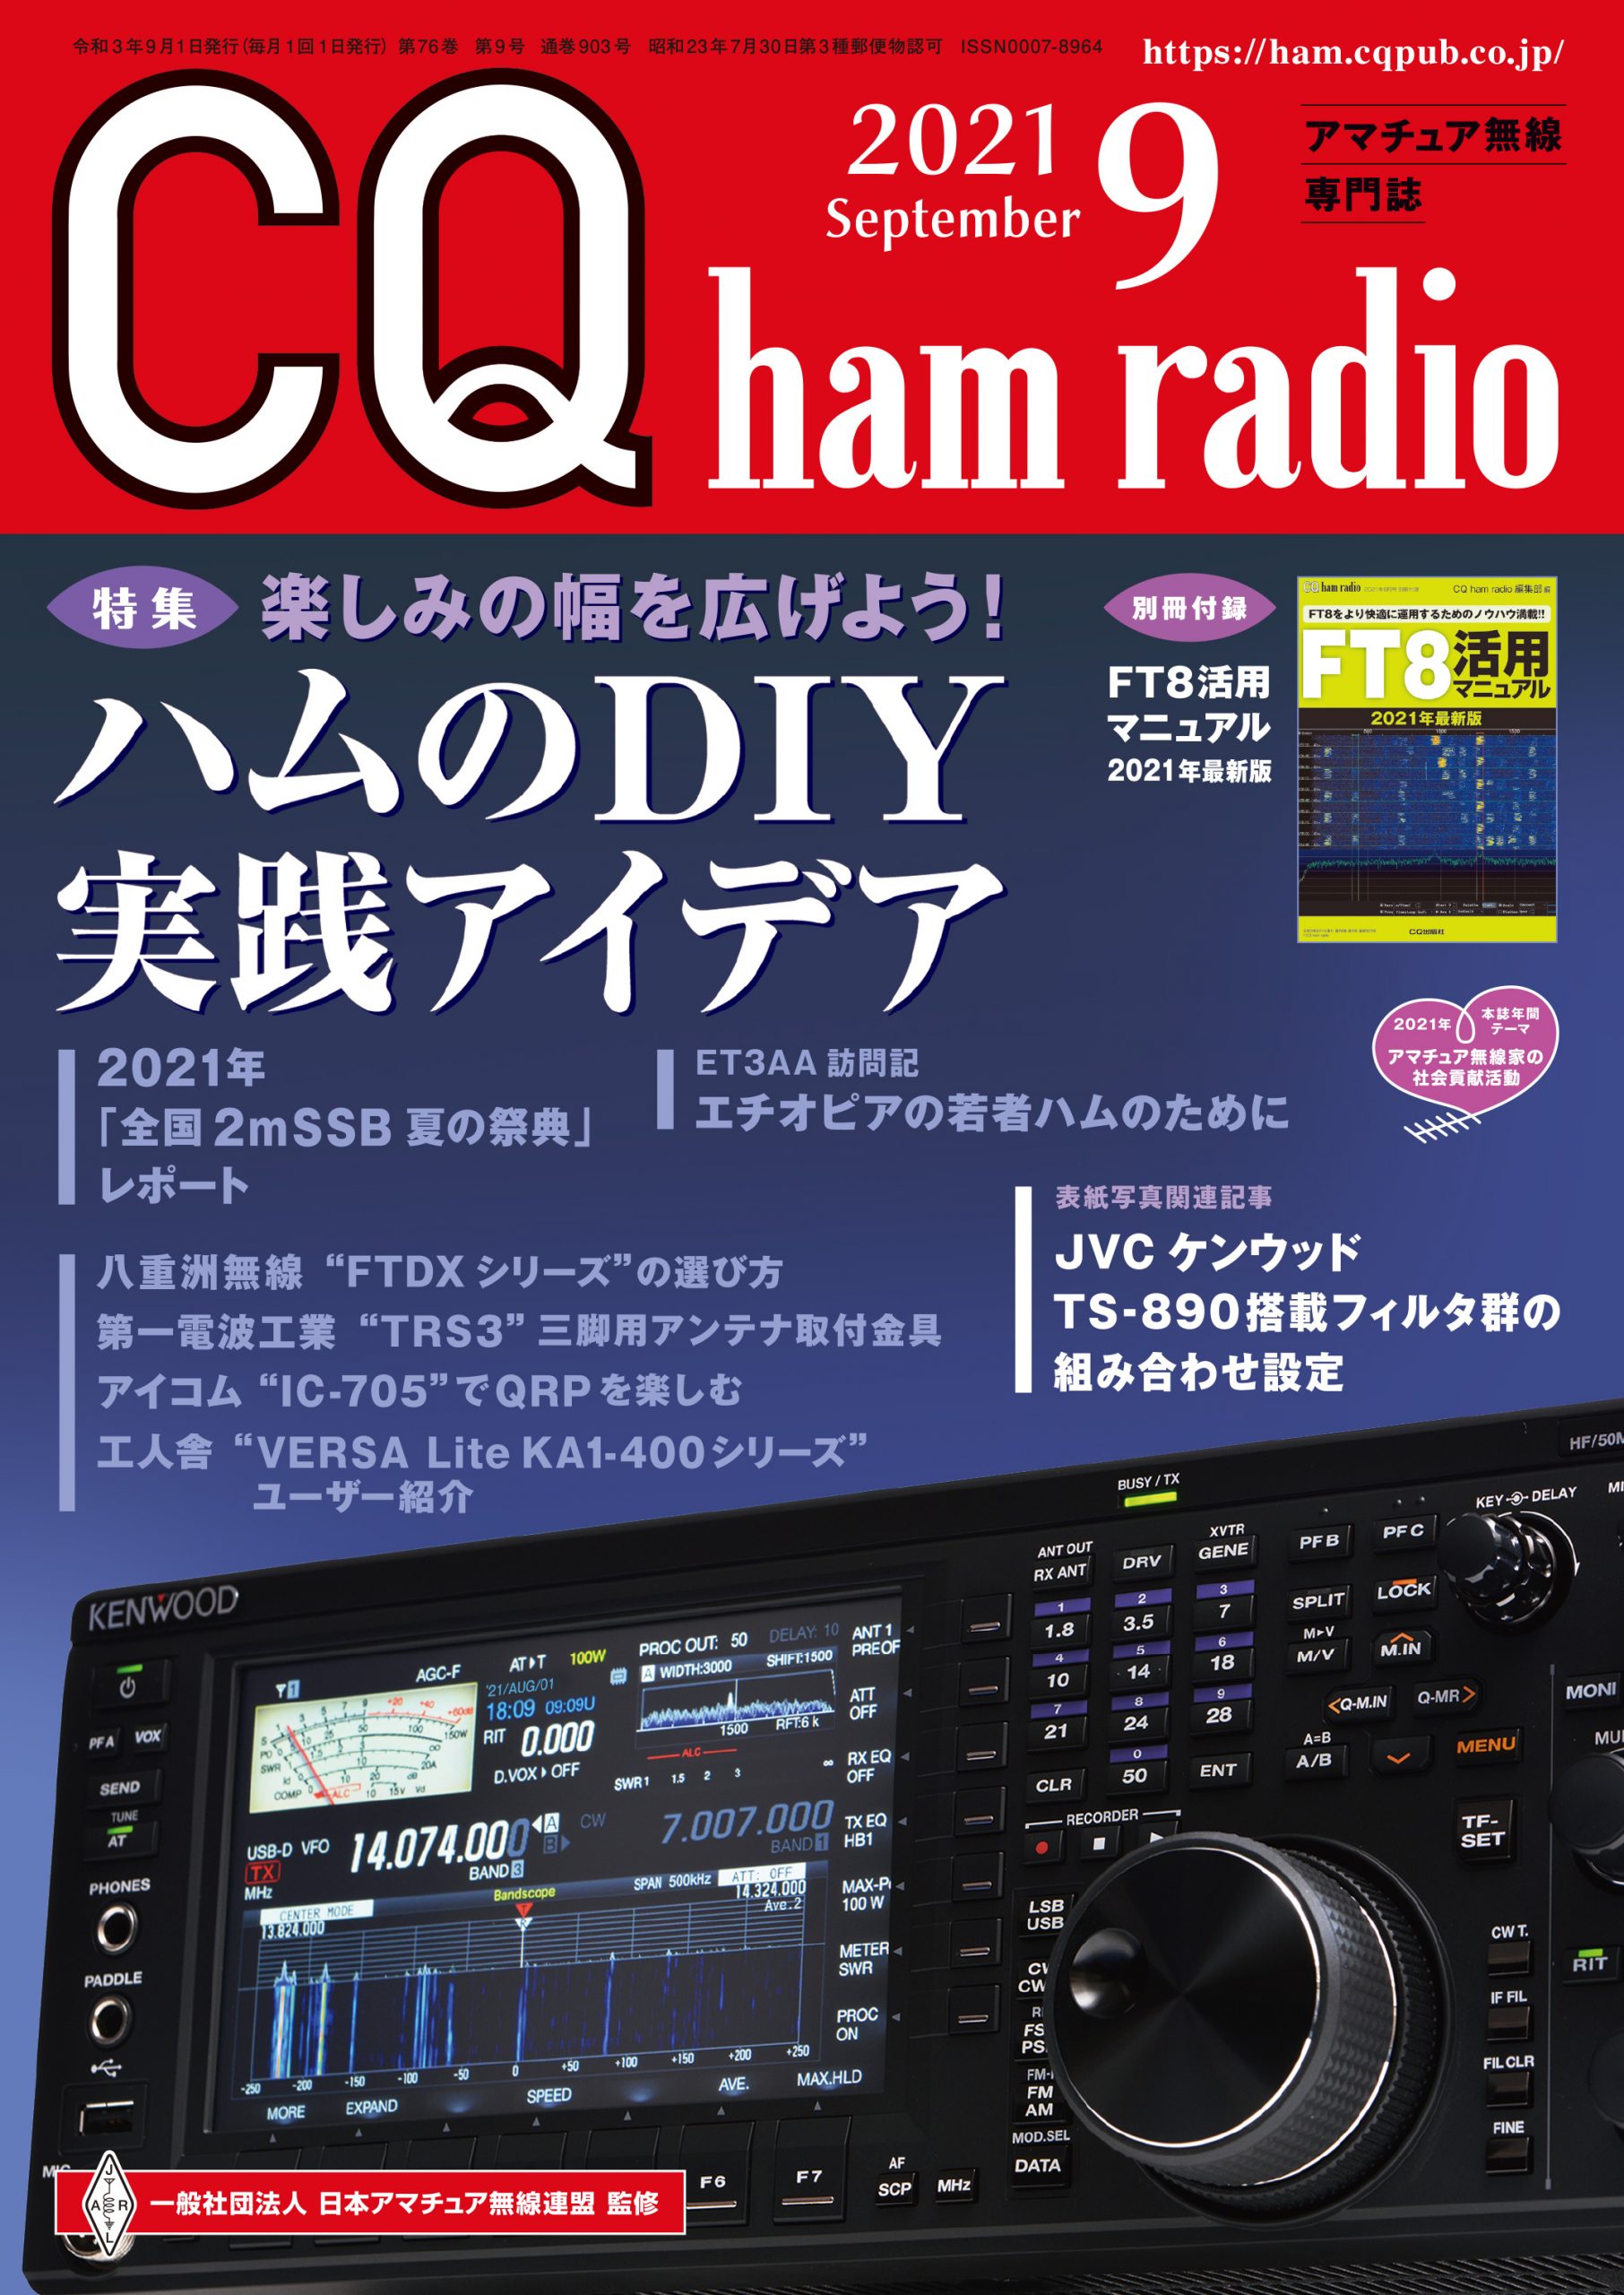 CQ ham radio 2021年 9月号